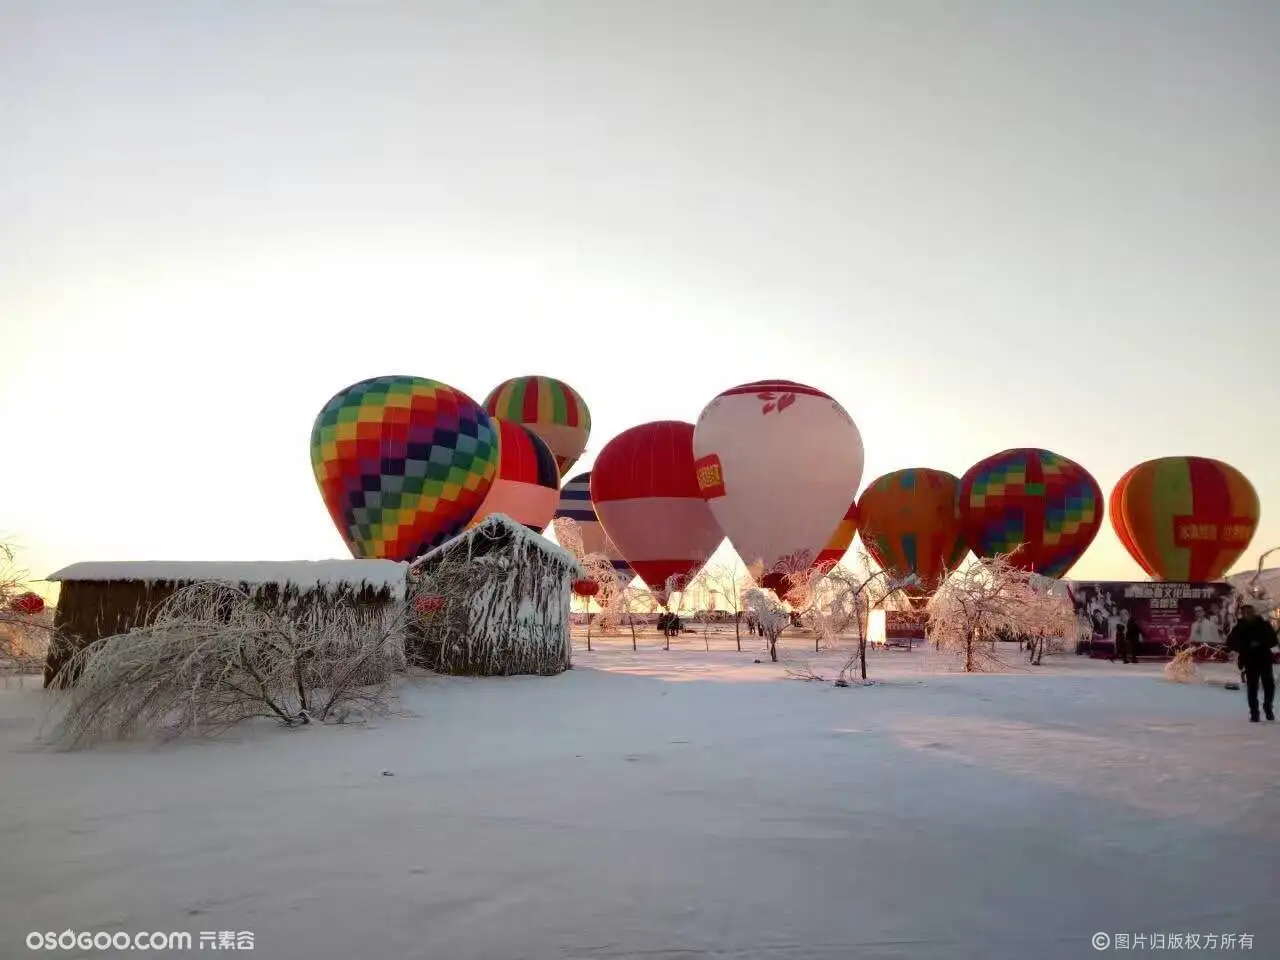 热气球资源，大型热气球嘉年华活动！